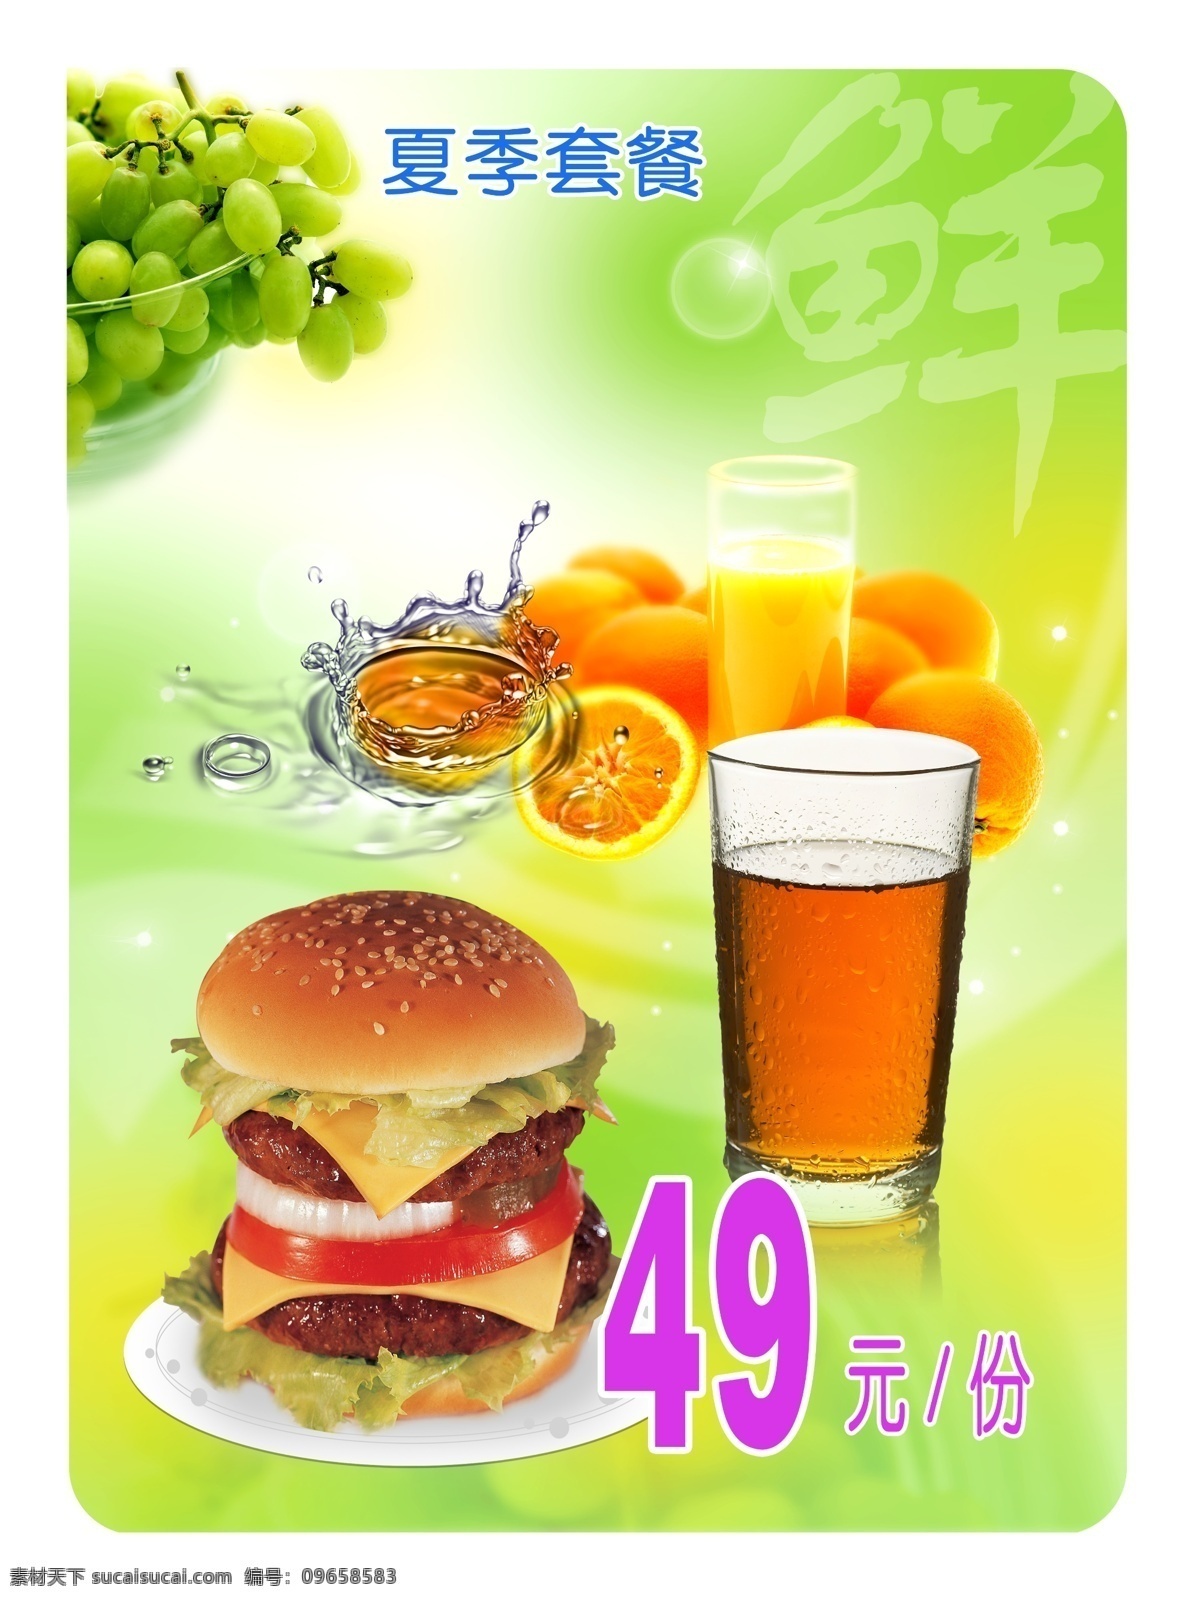 食品餐饮 餐饮海报 汉堡包 可乐 柠檬美食广告 菜单模板 饮料 柠檬 美食 美味 底纹 模板 菜单菜谱 广告设计模板 源文件